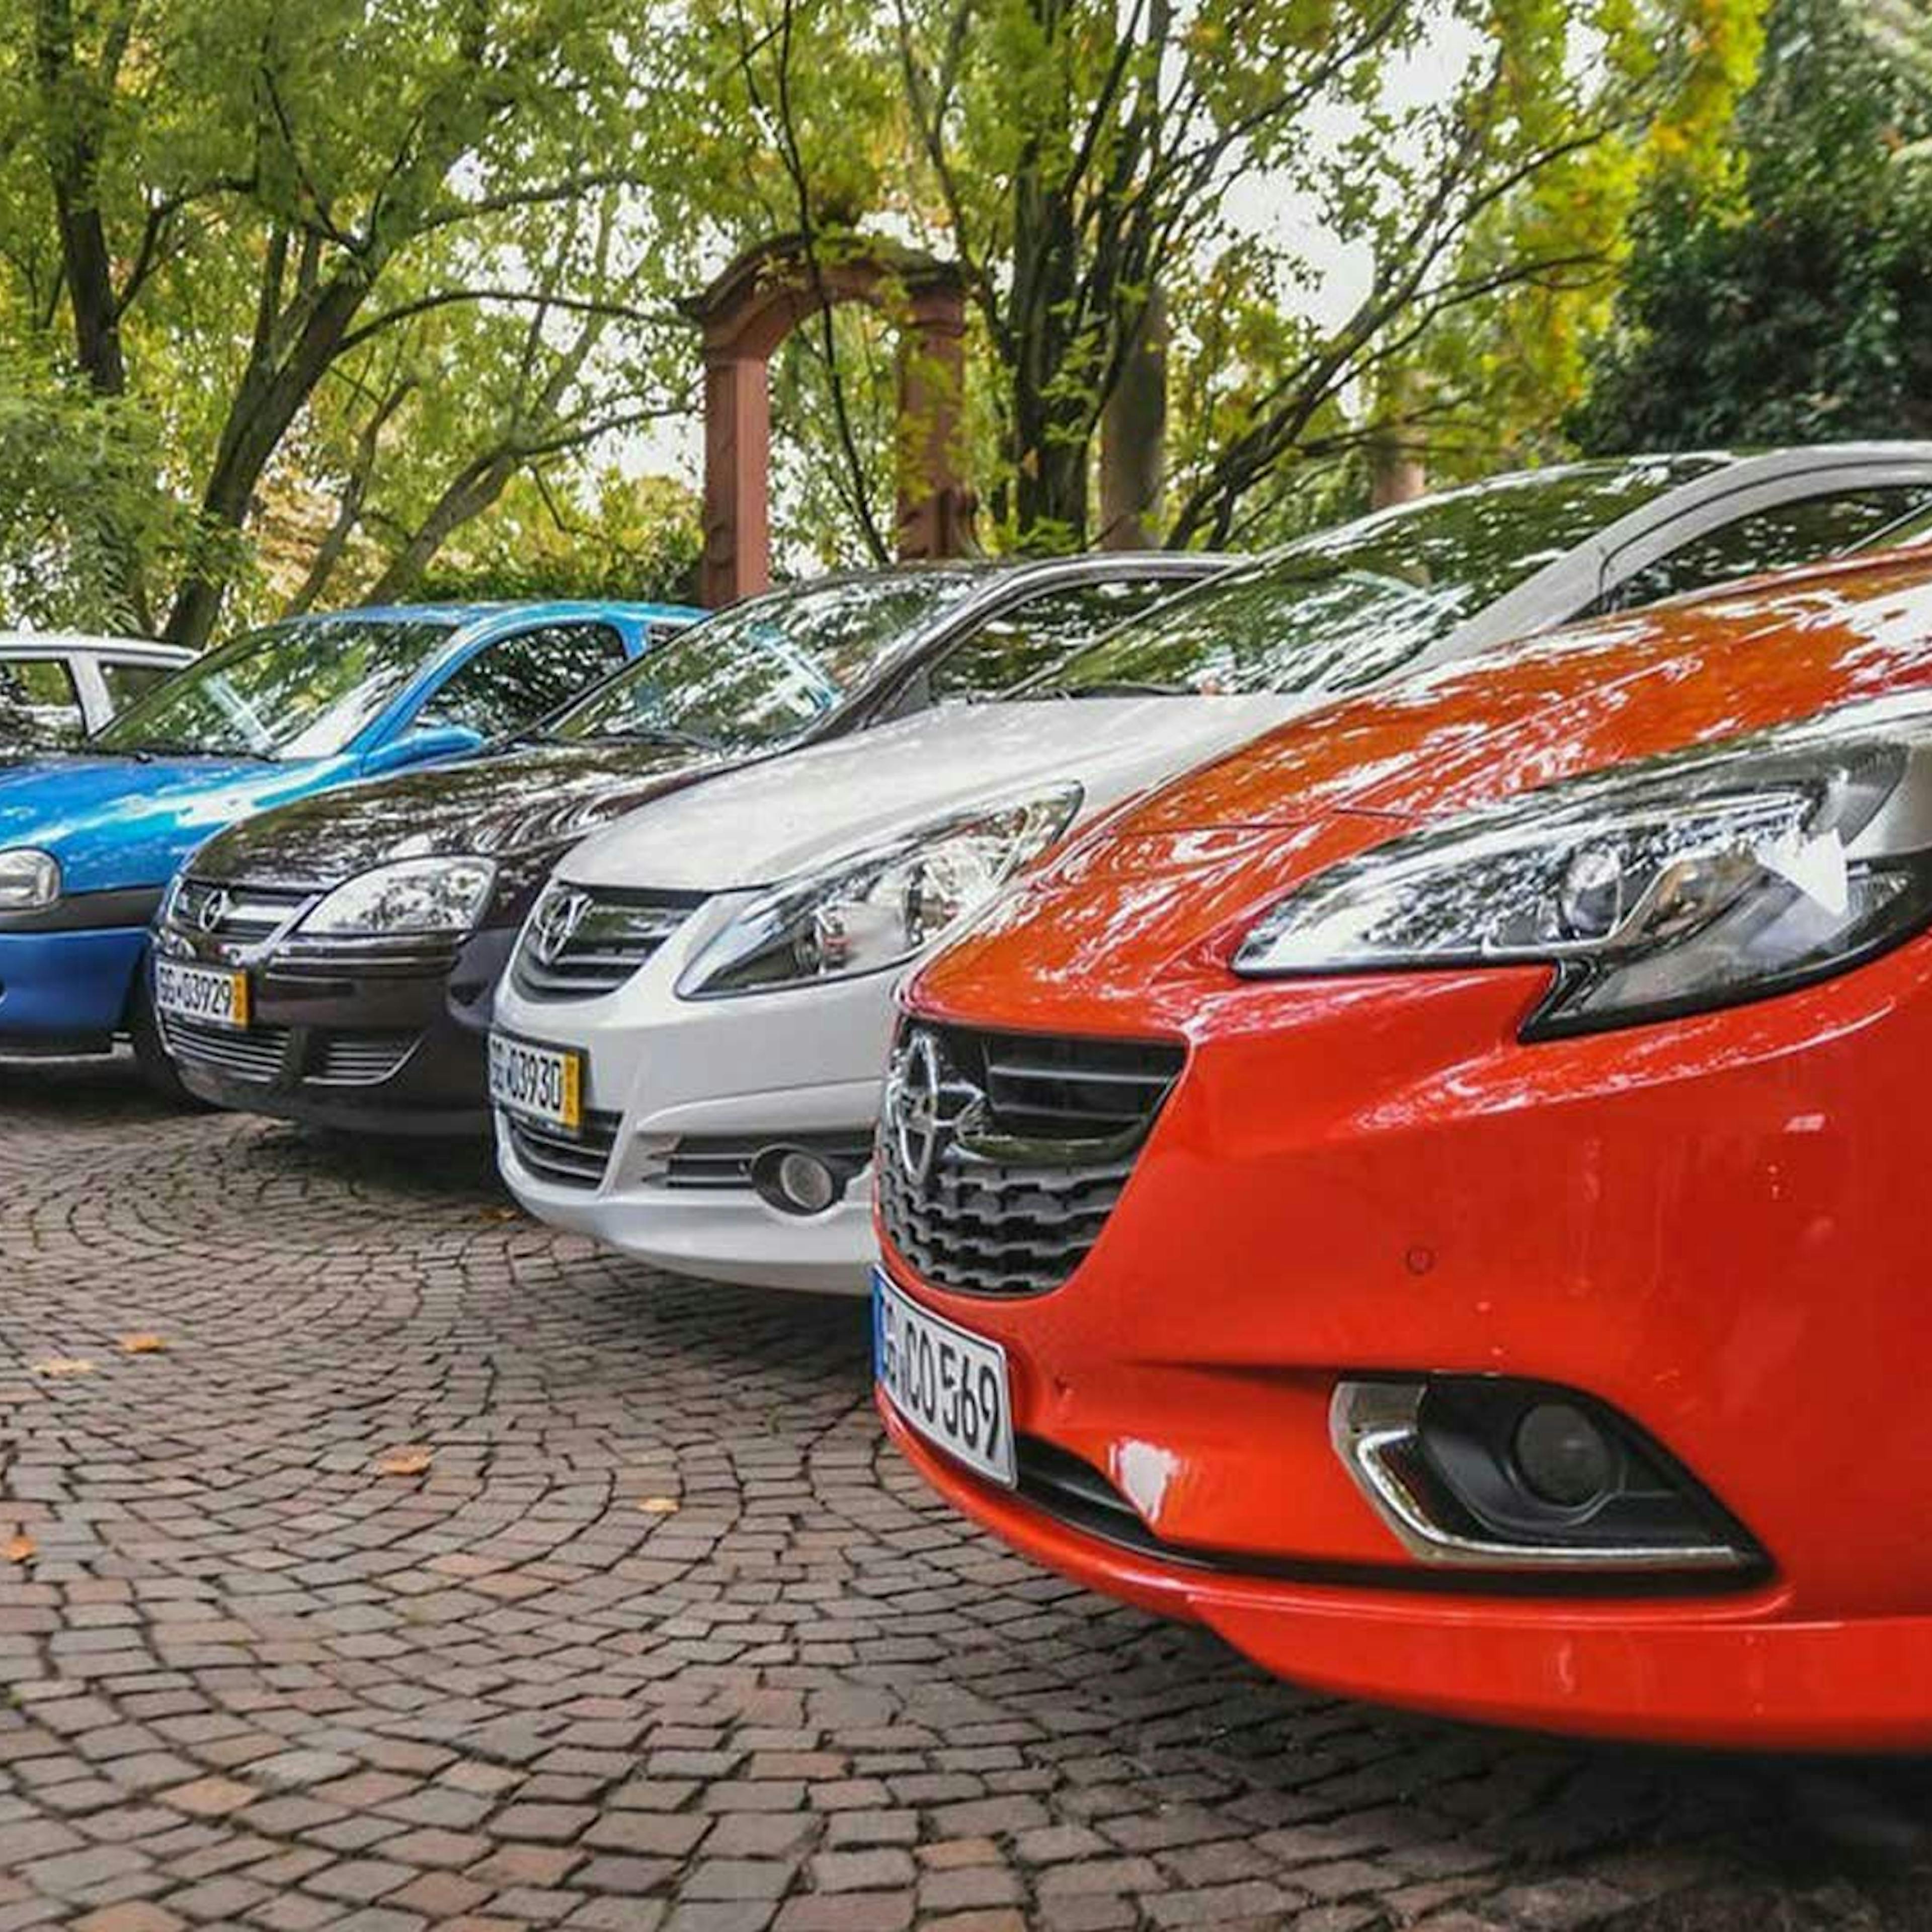 Fünf Pkw der Marke Opel stehen nebeneinander auf einem Parkplatz mit Bäumen im Hintergrund